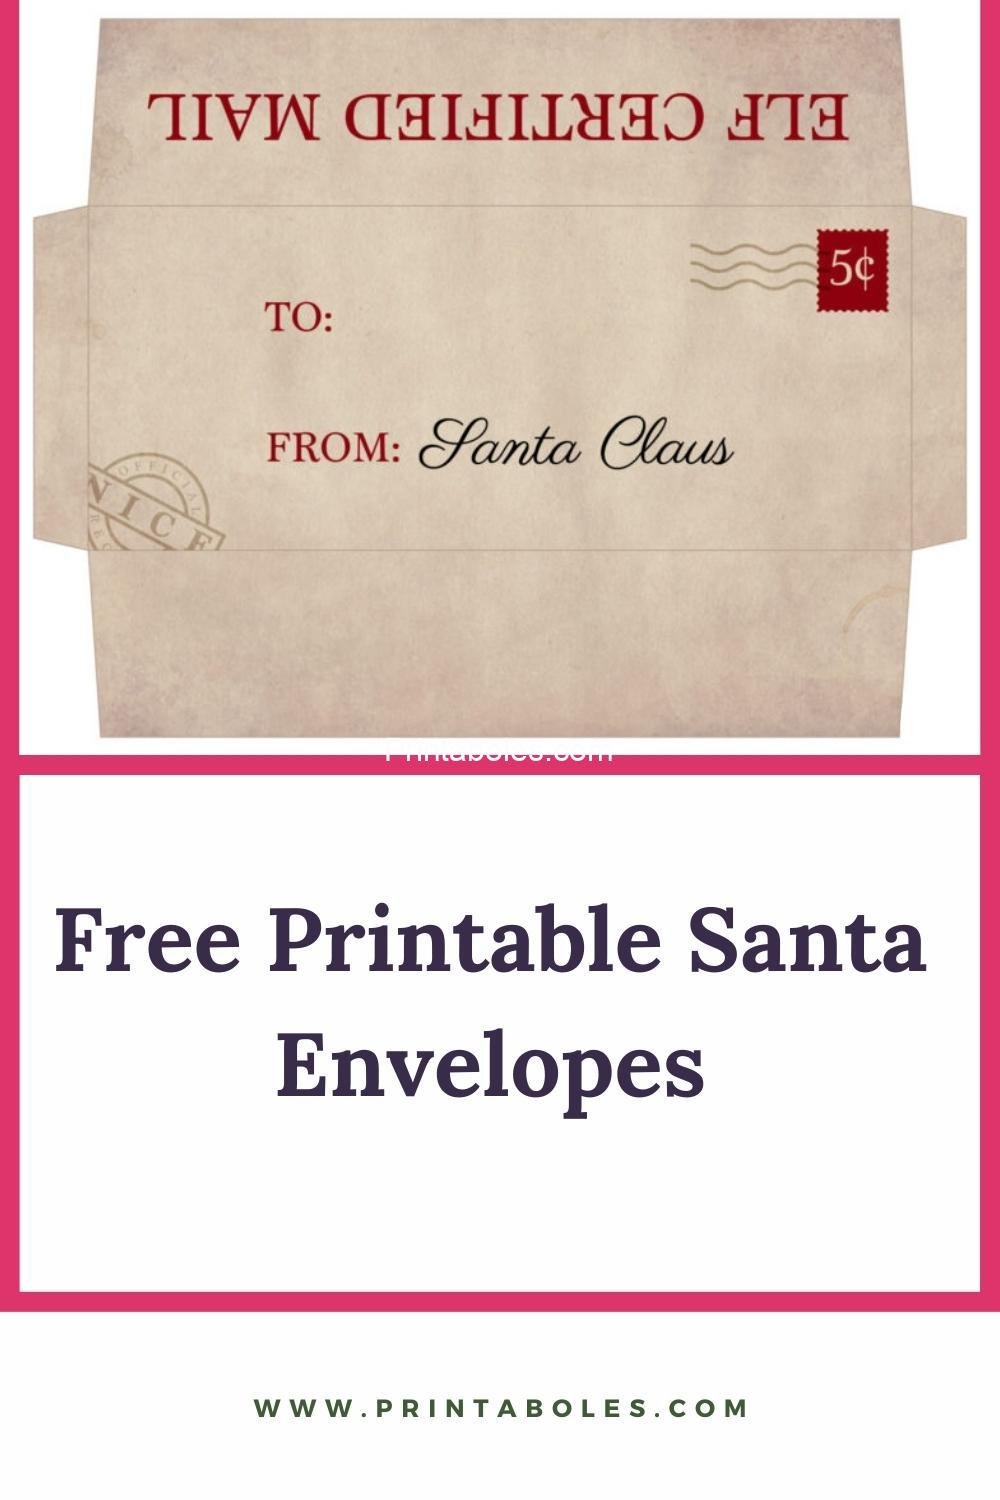 Free Printable Santa Envelopes